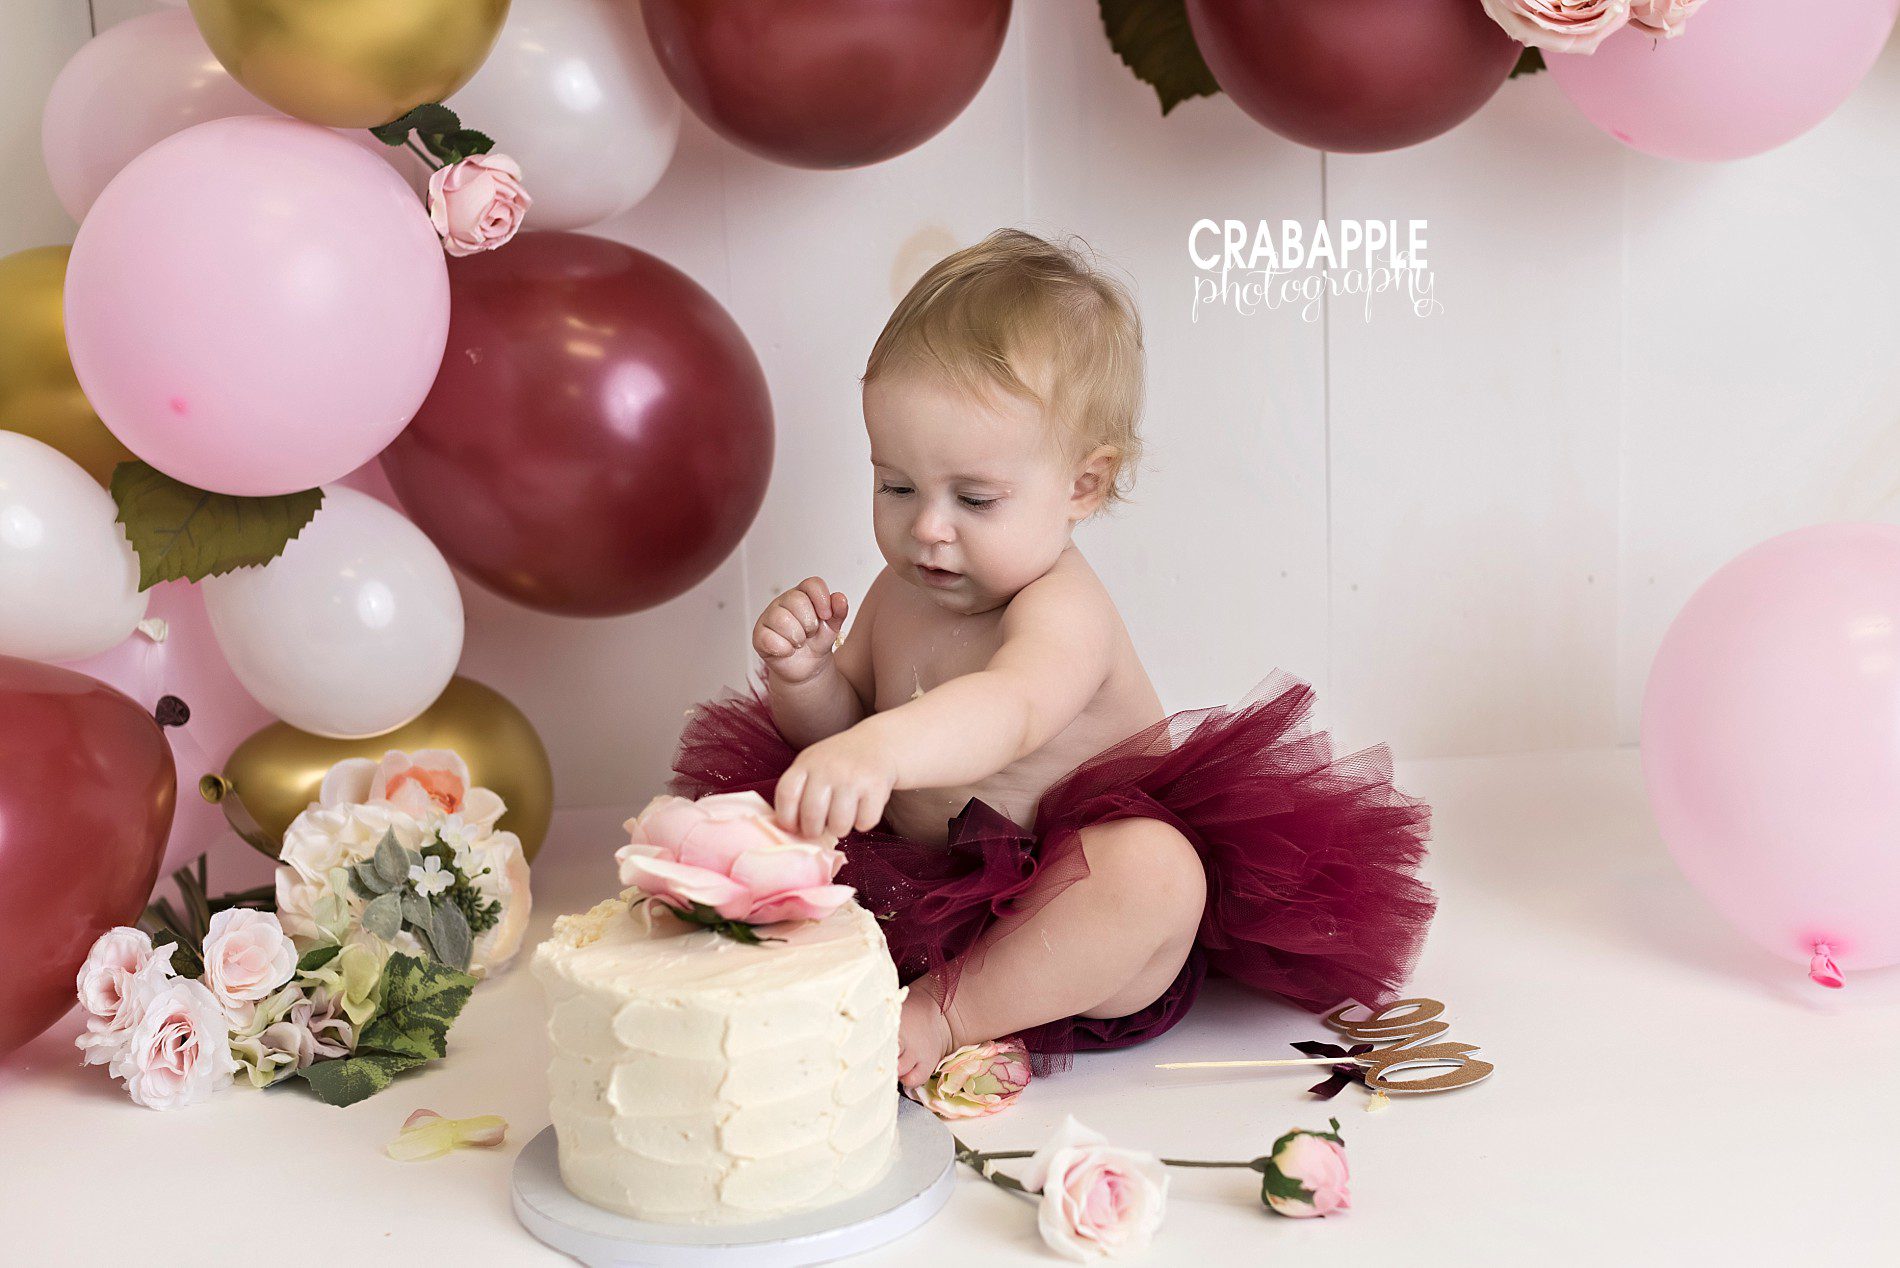 Ideas for cake smash photos for girls